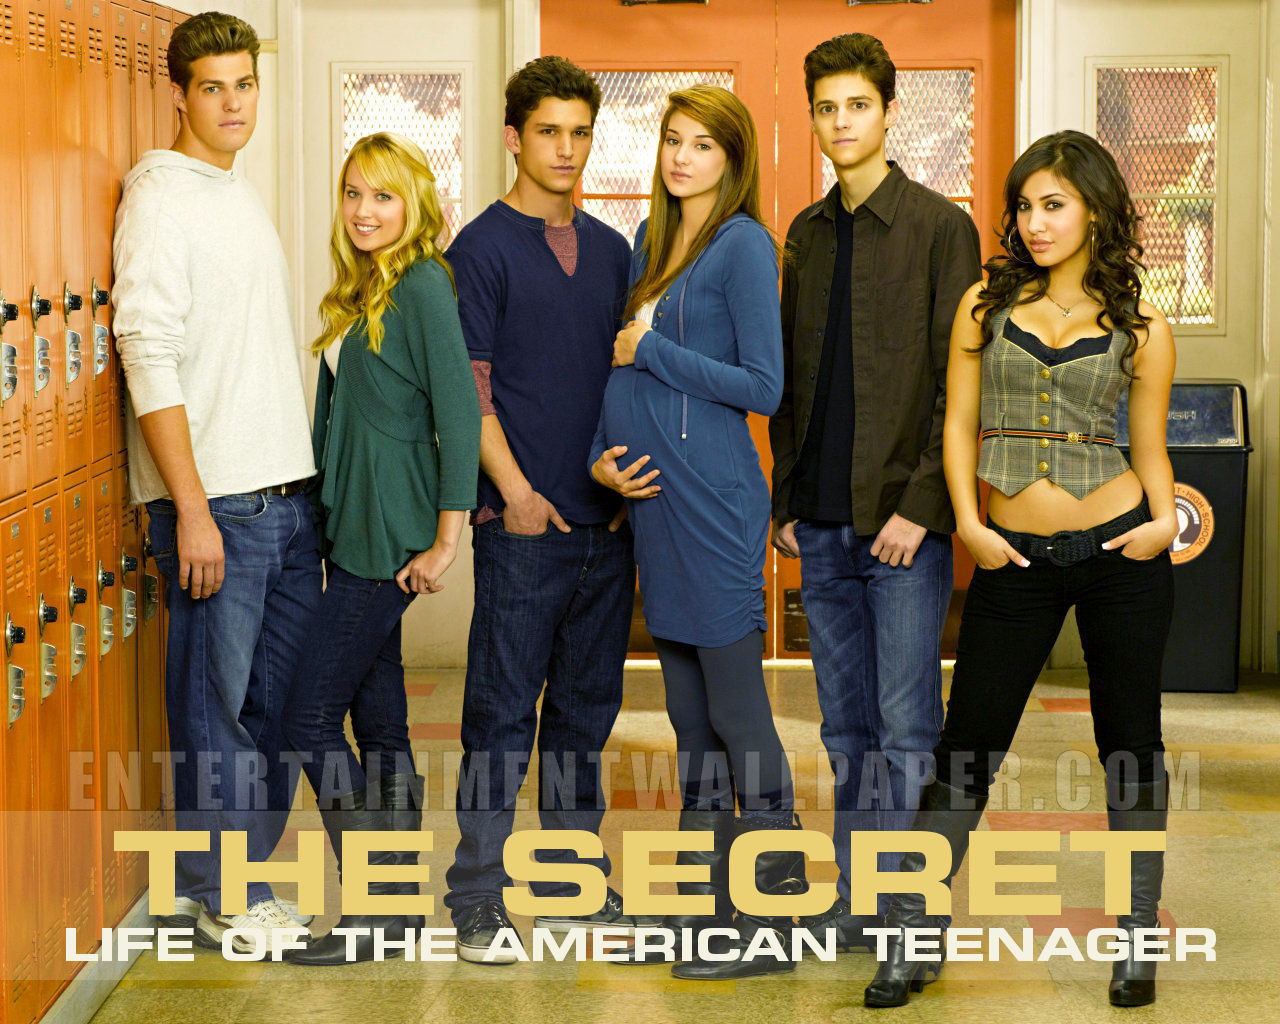 an teen american of Secretlife